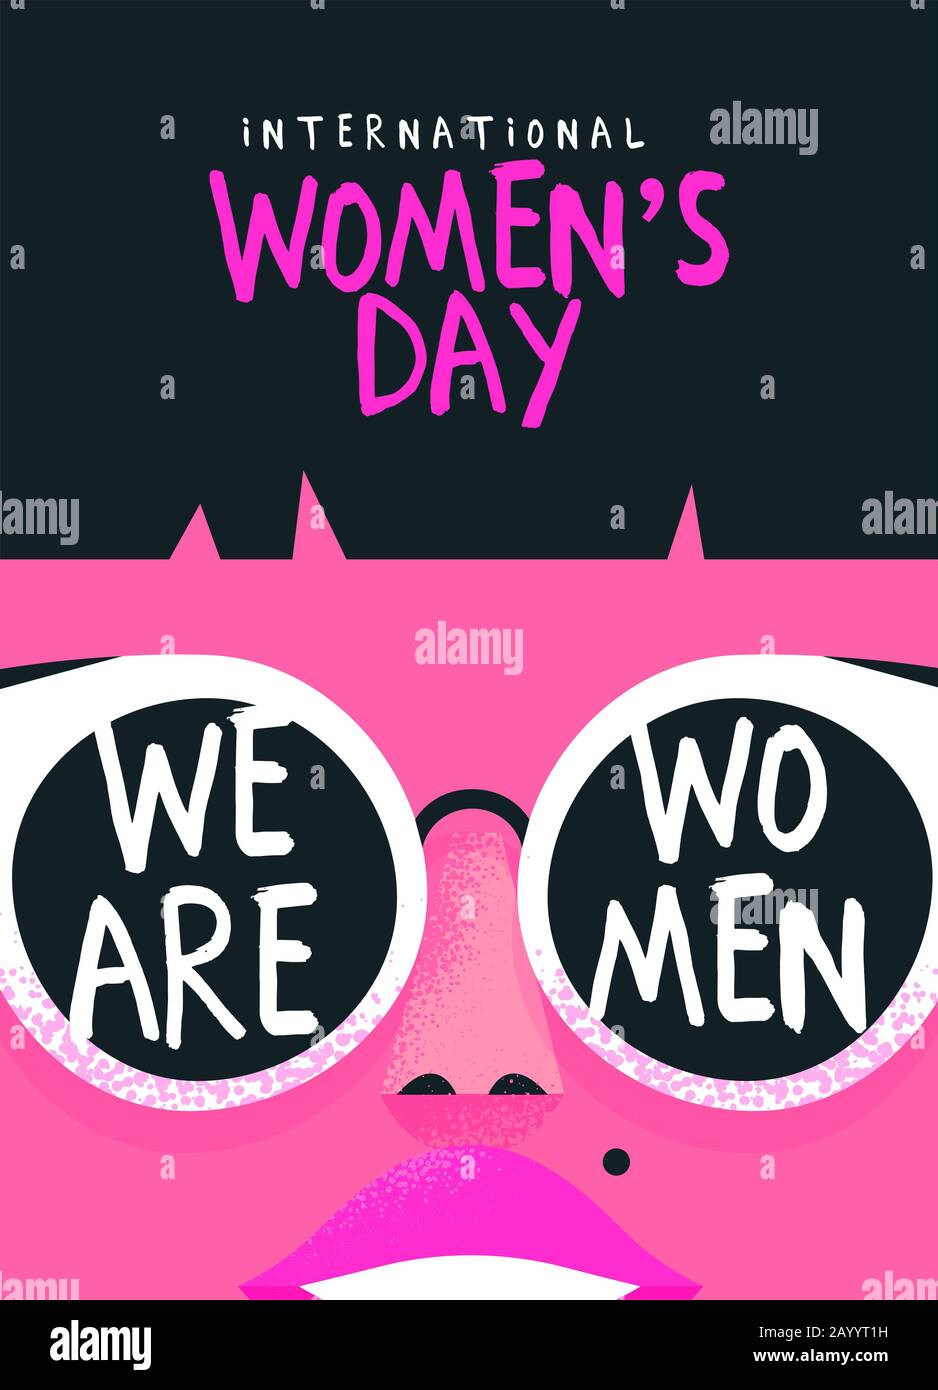 Internationale Grußkarte Für Den Frauentag Illustration des schönen Mädchen-Gesichts mit trendigen Sonnenbrillen und einem Textzitat zur Stärkung der Frau. Rosa femi Stock Vektor